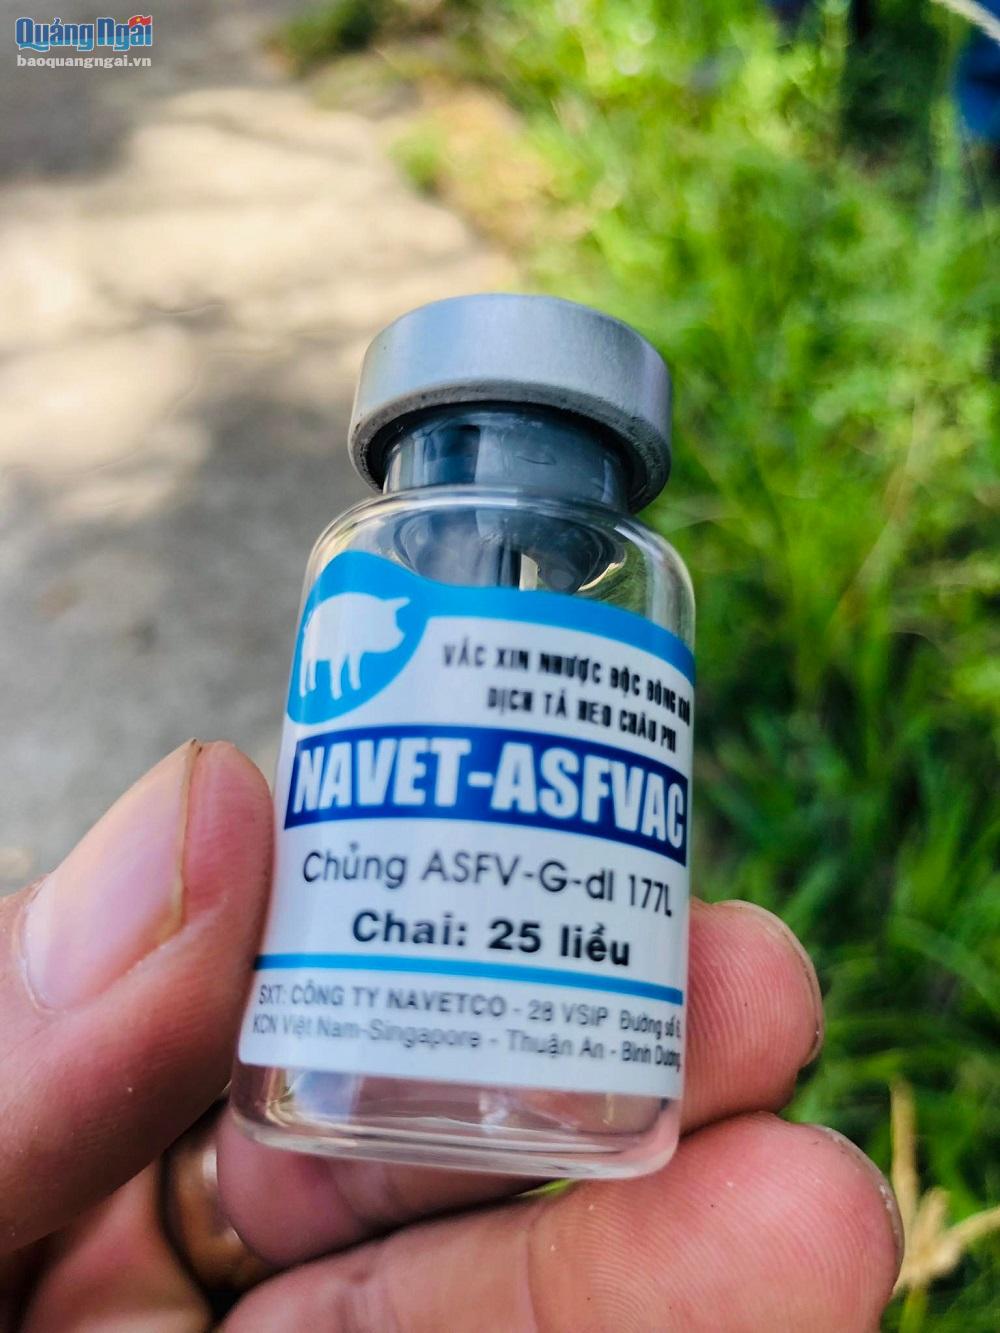 Công ty Navetco phải có trách nhiệm với hộ nuôi heo bị chết do tiêm vắc xin NAVET-ASFVAC